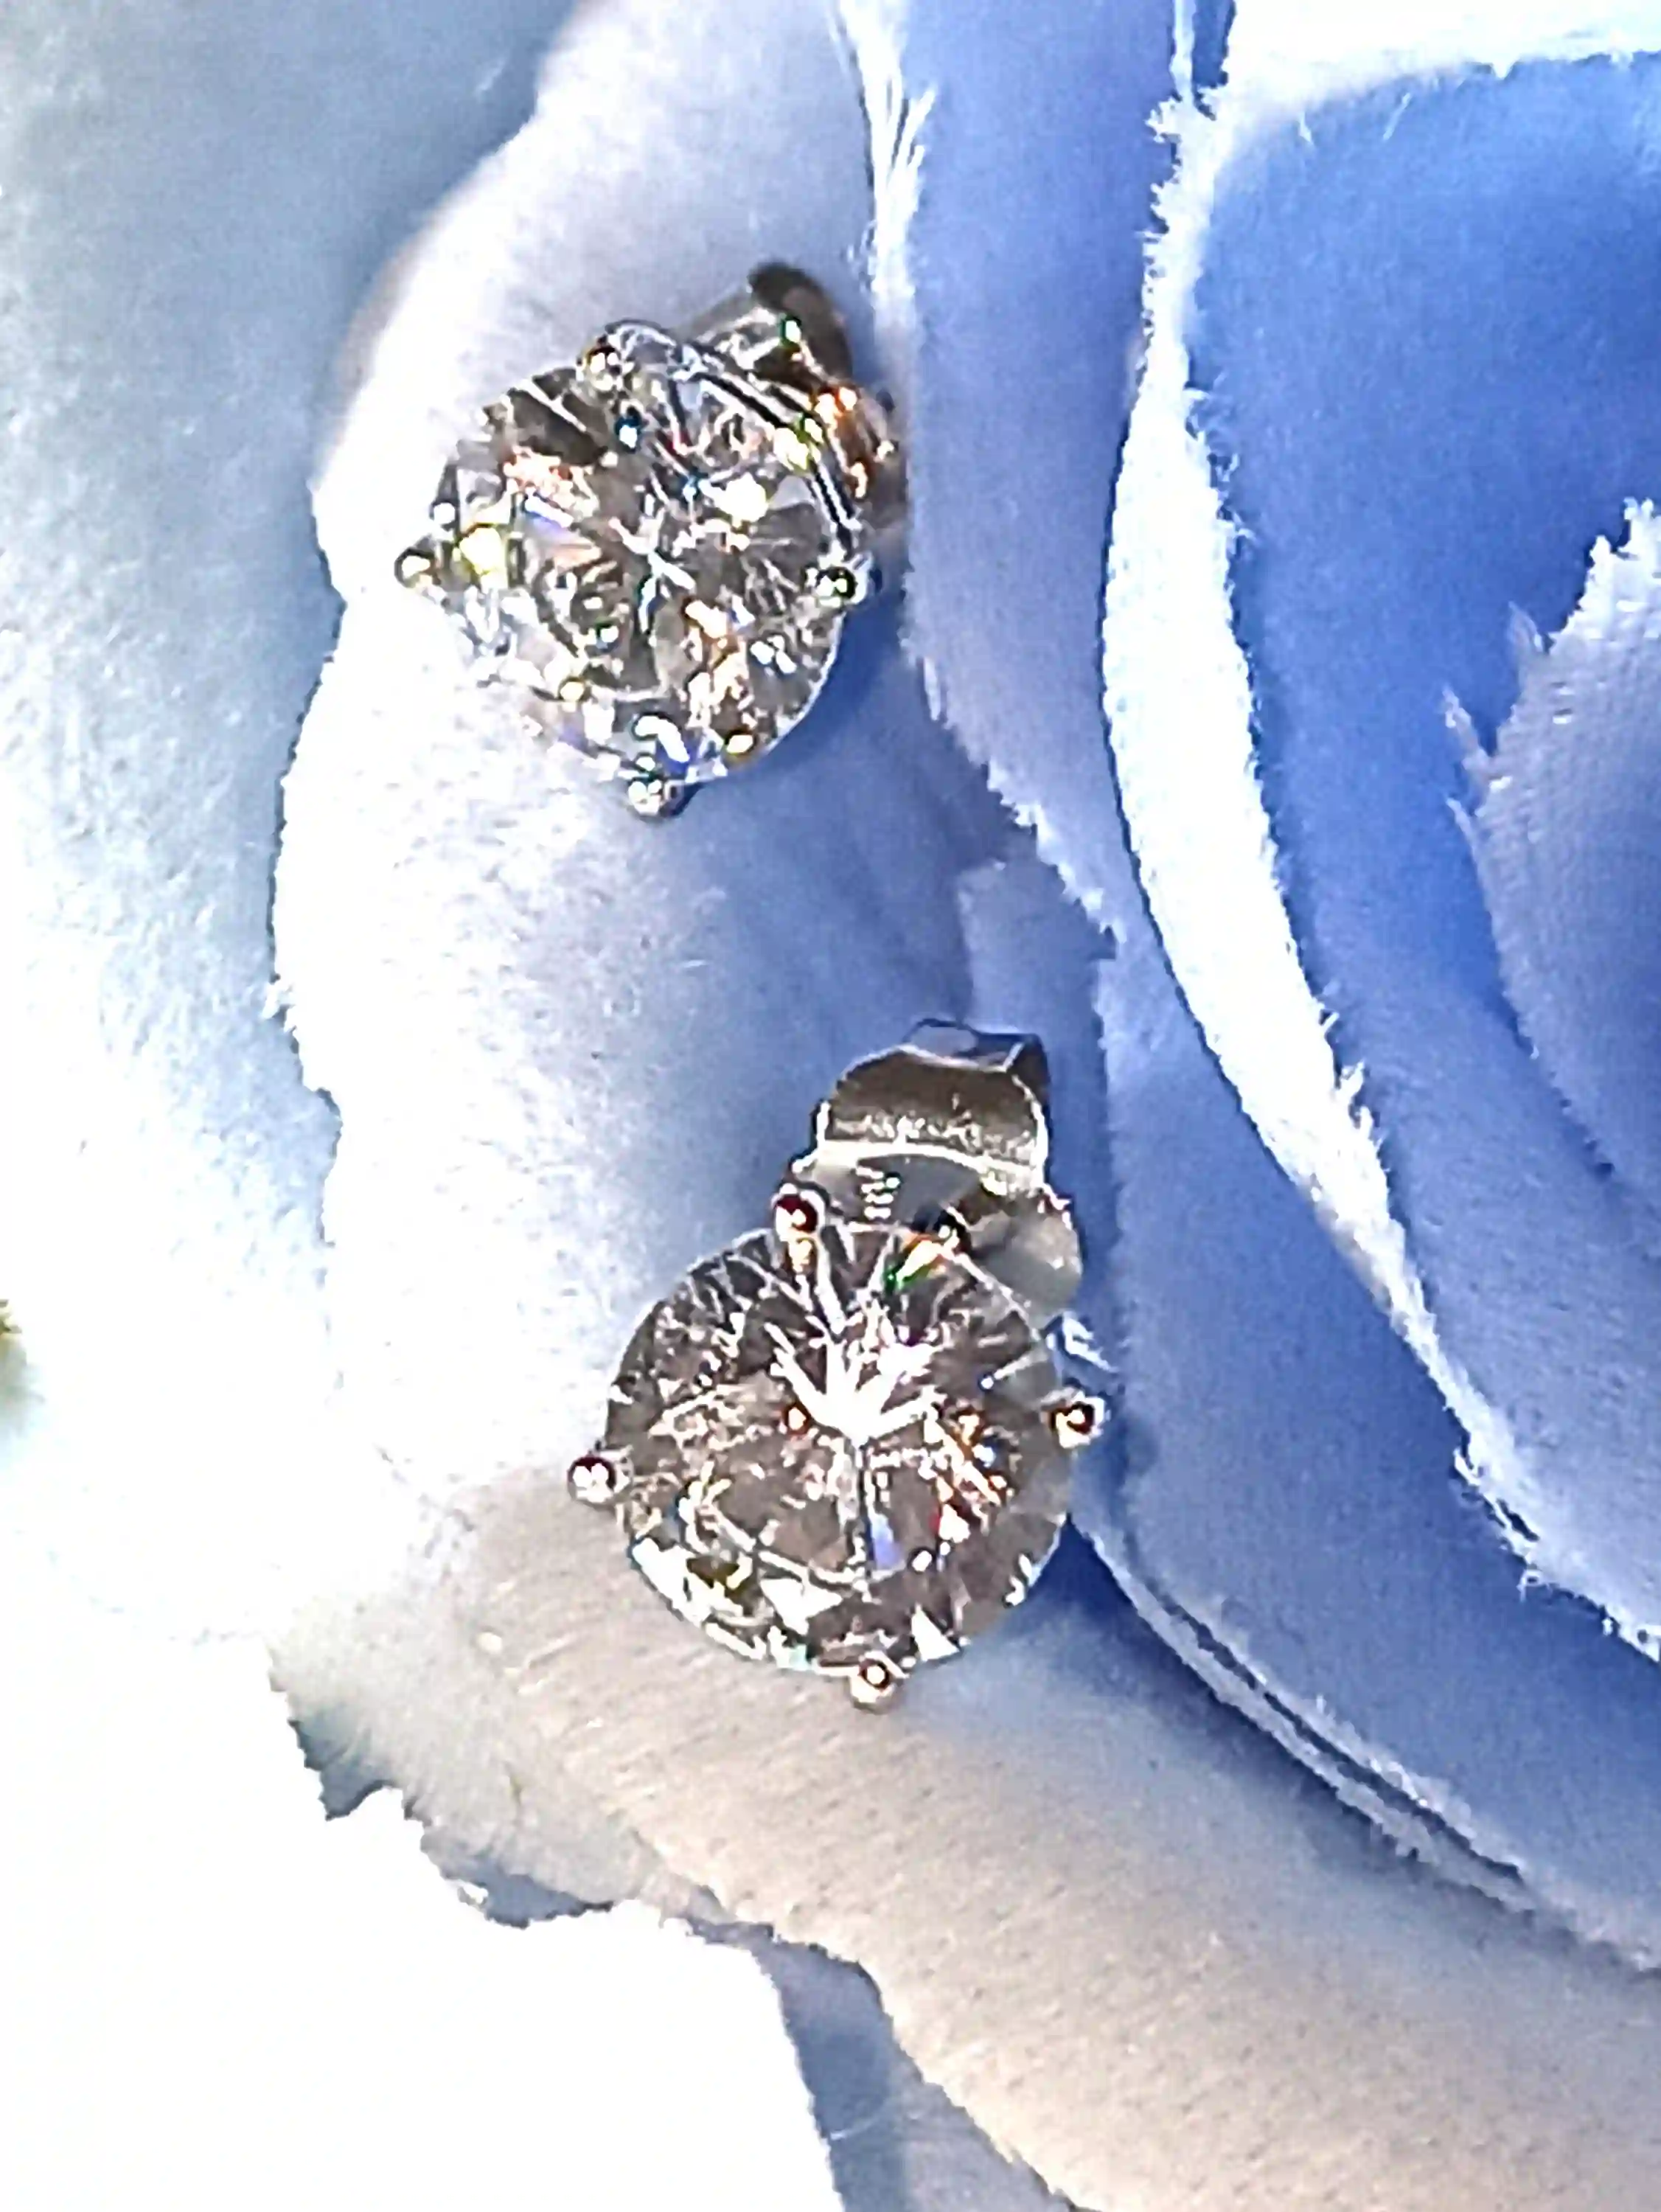 Bridal Earrings 2 carat Diamond Stud Earrings SOLID 18k GOLD Earrings White Gold Gift for her Wedding Earrings Bride Diamond Studs Handmade 